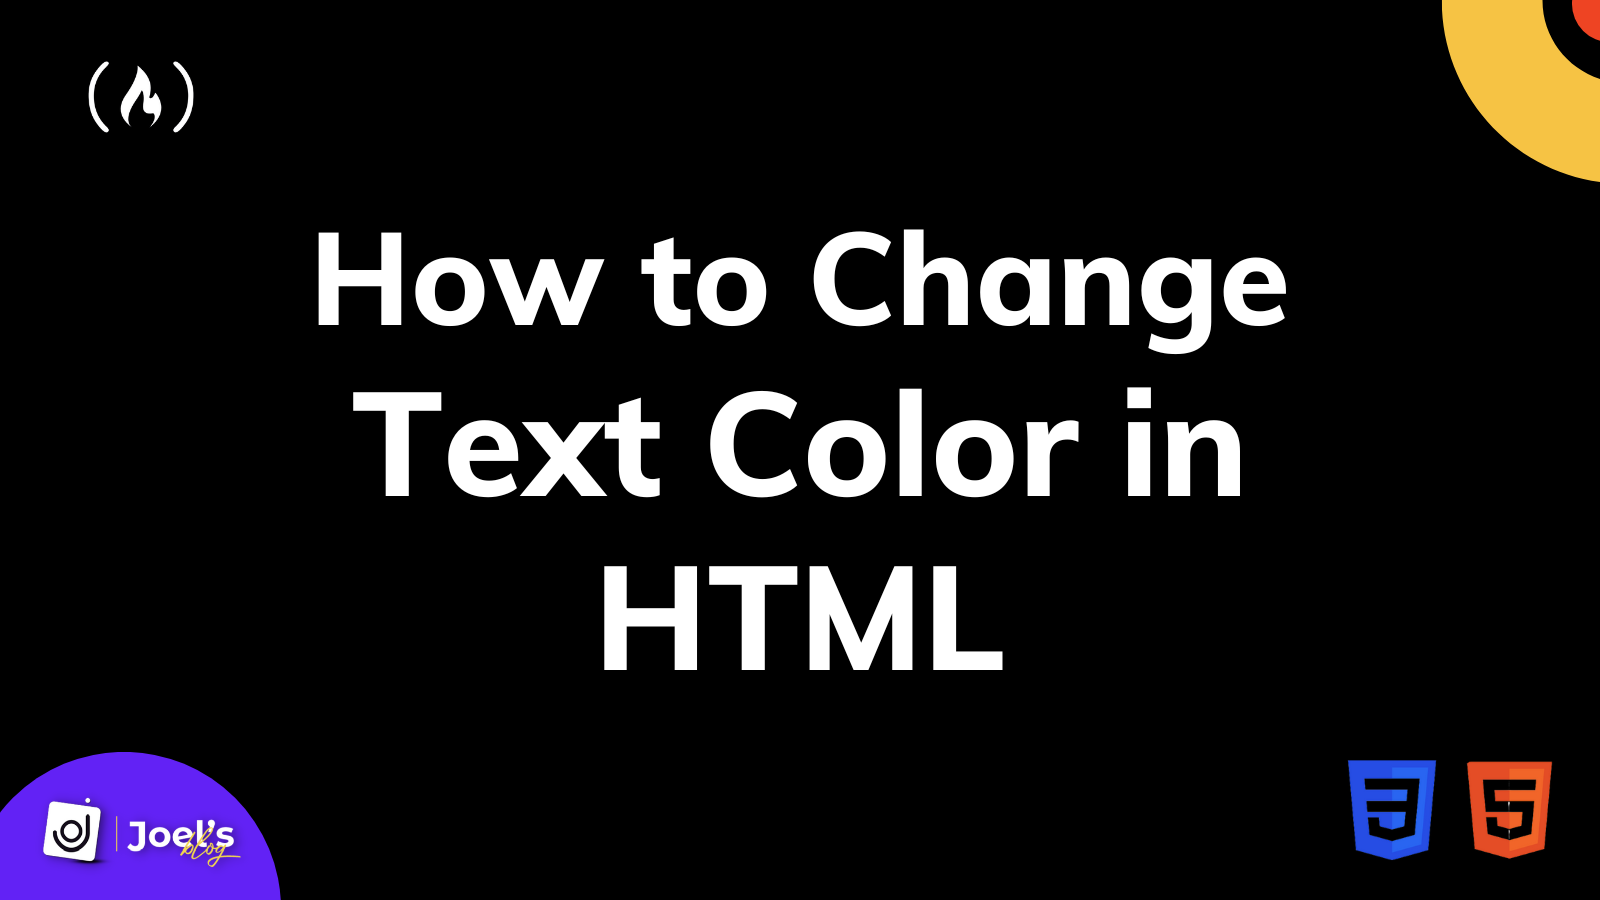 Màu sắc chữ, kiểu font và HTML Tutorial là ba yếu tố quan trọng giúp bạn tạo ra những trang web đẹp mắt và dễ đọc. Nếu bạn muốn tìm hiểu cách chọn màu sắc và font, cùng với hướng dẫn HTML chi tiết, hãy xem hình ảnh liên quan.